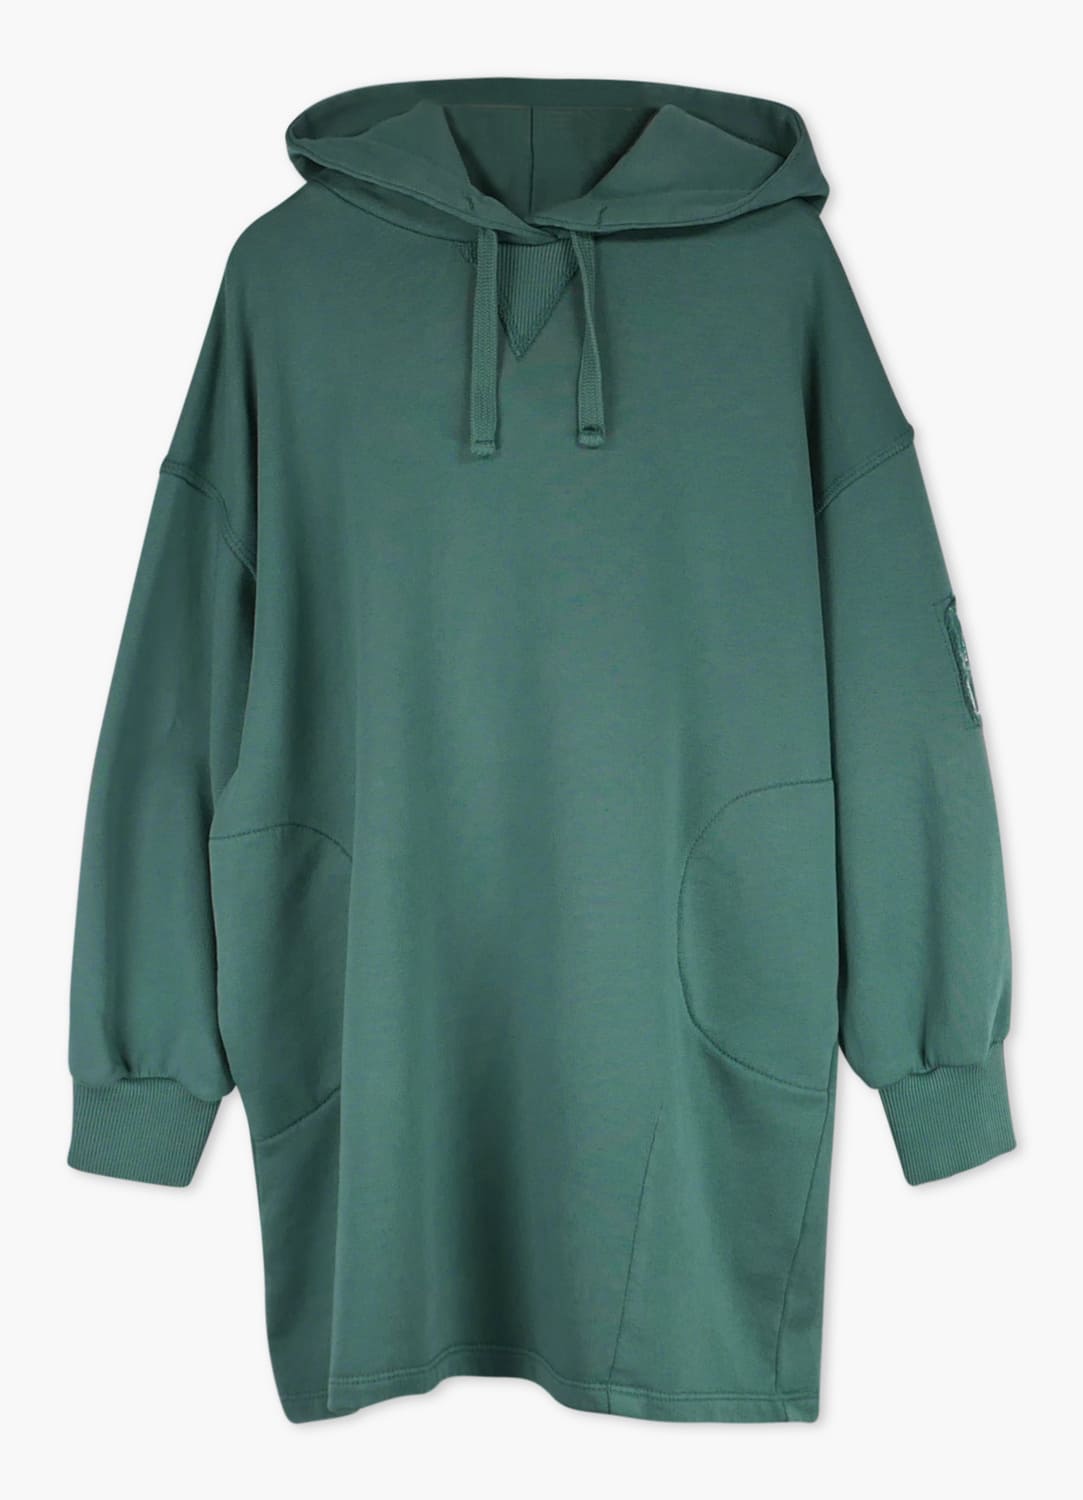 Lmn3 Hooded Dress - Green